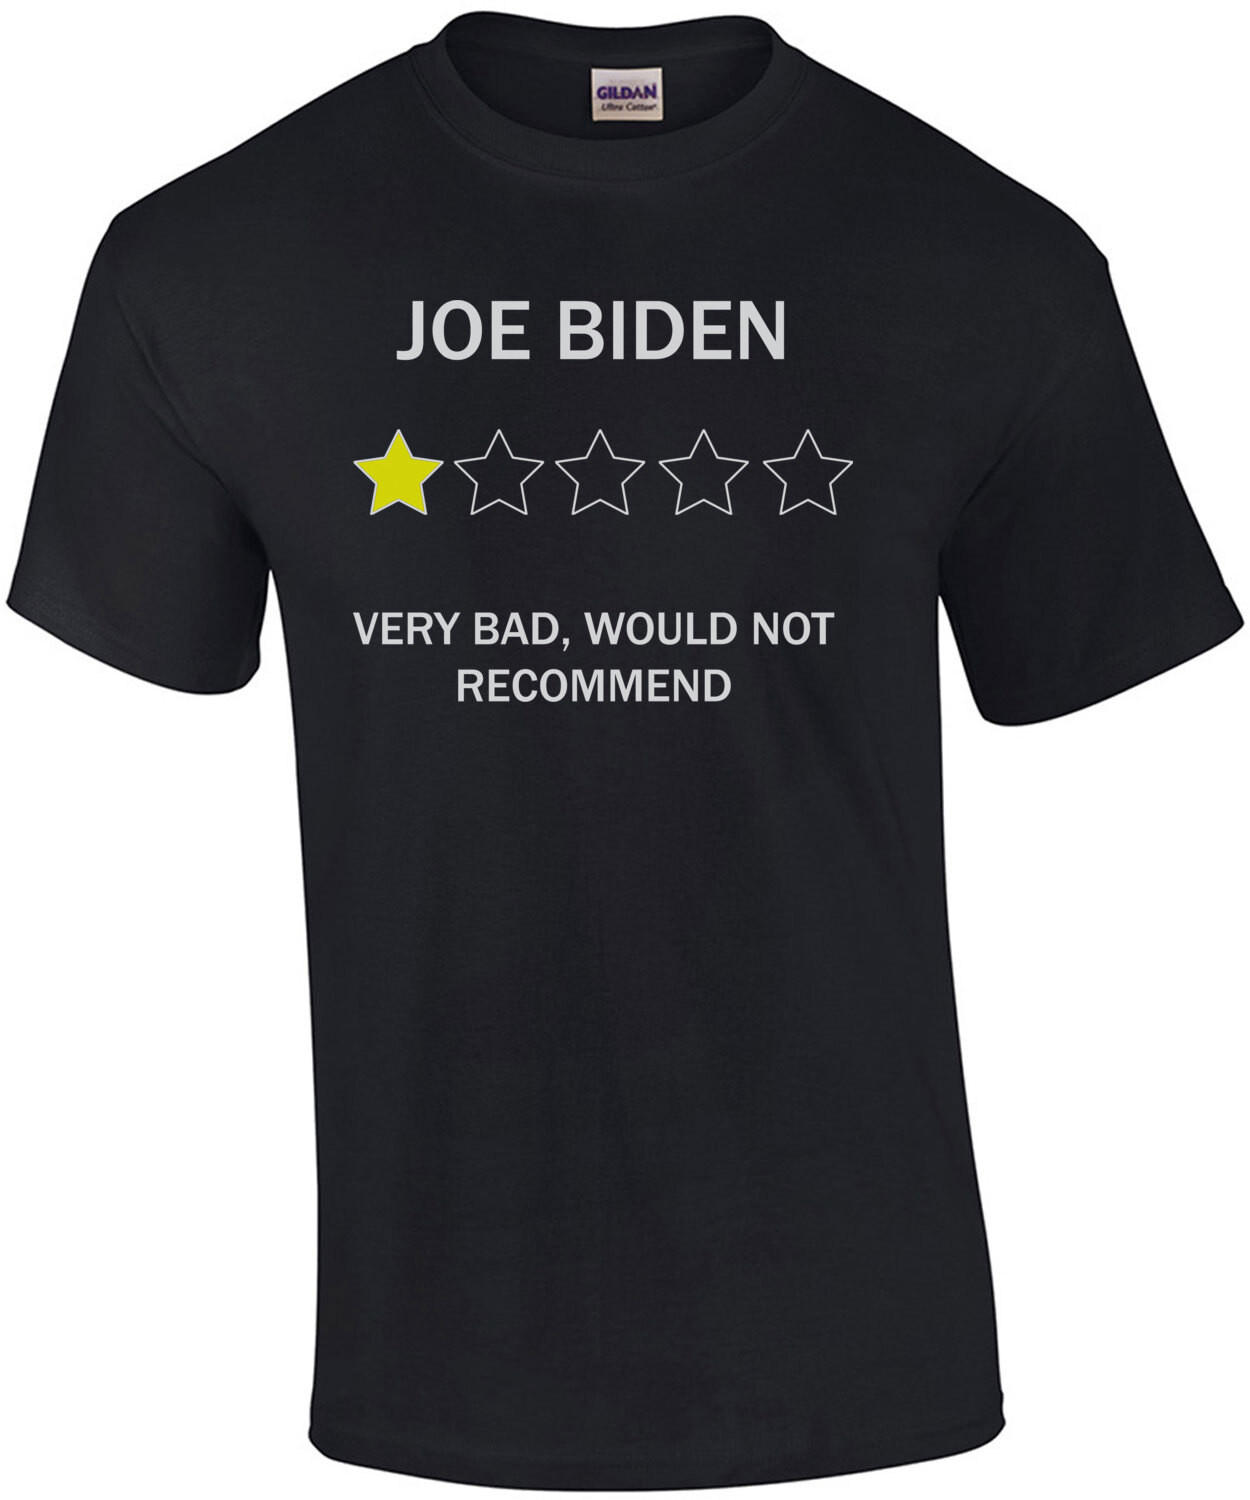 Joe Biden 1 Star Review Shirt